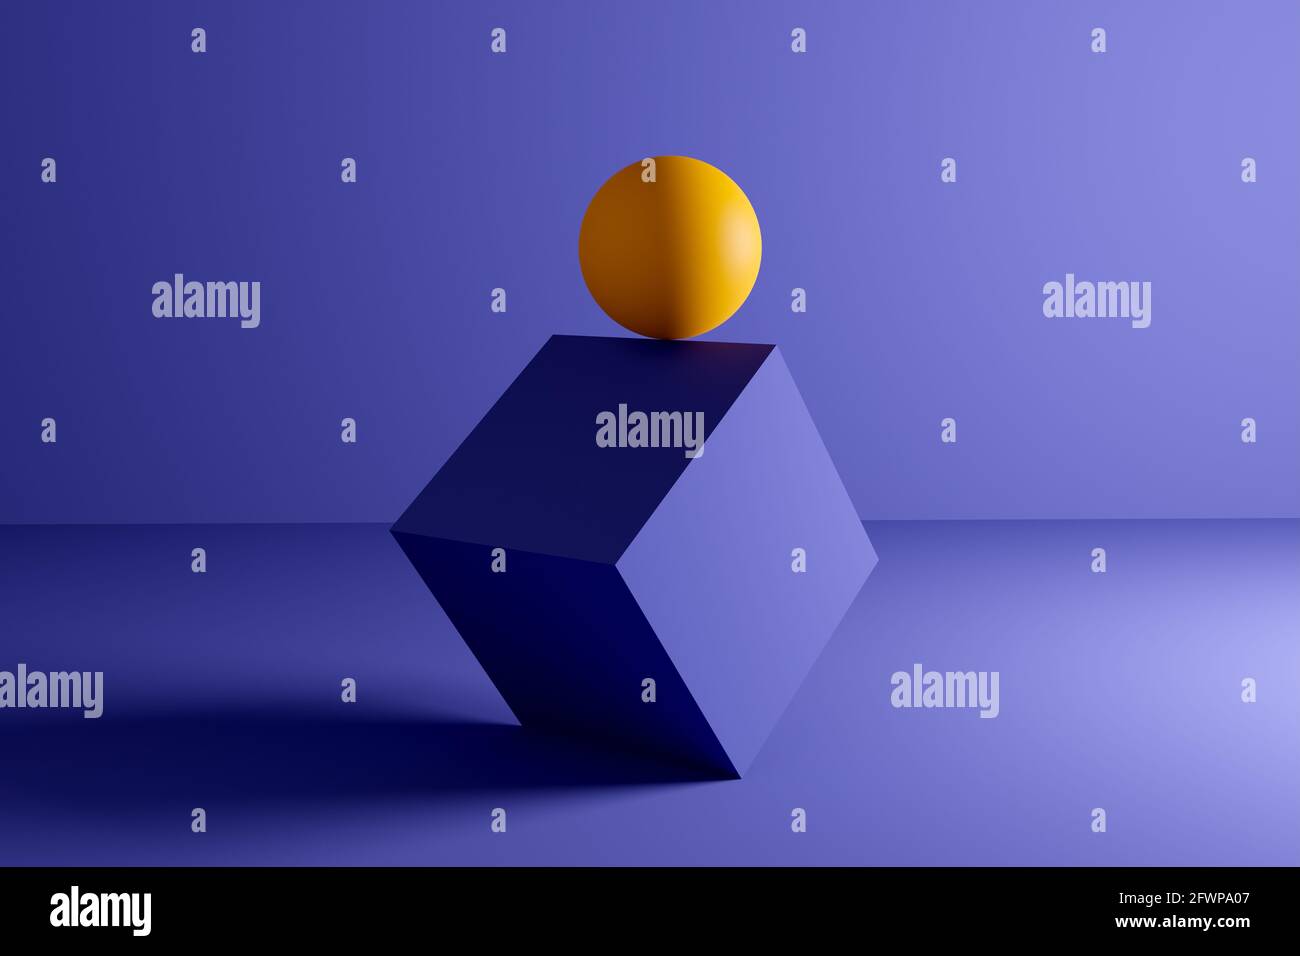 Esfera amarilla o bola balanceada en el borde de una forma geométrica de cubo sobre fondo azul. Resumen 3D ilustración de fondo. Foto de stock